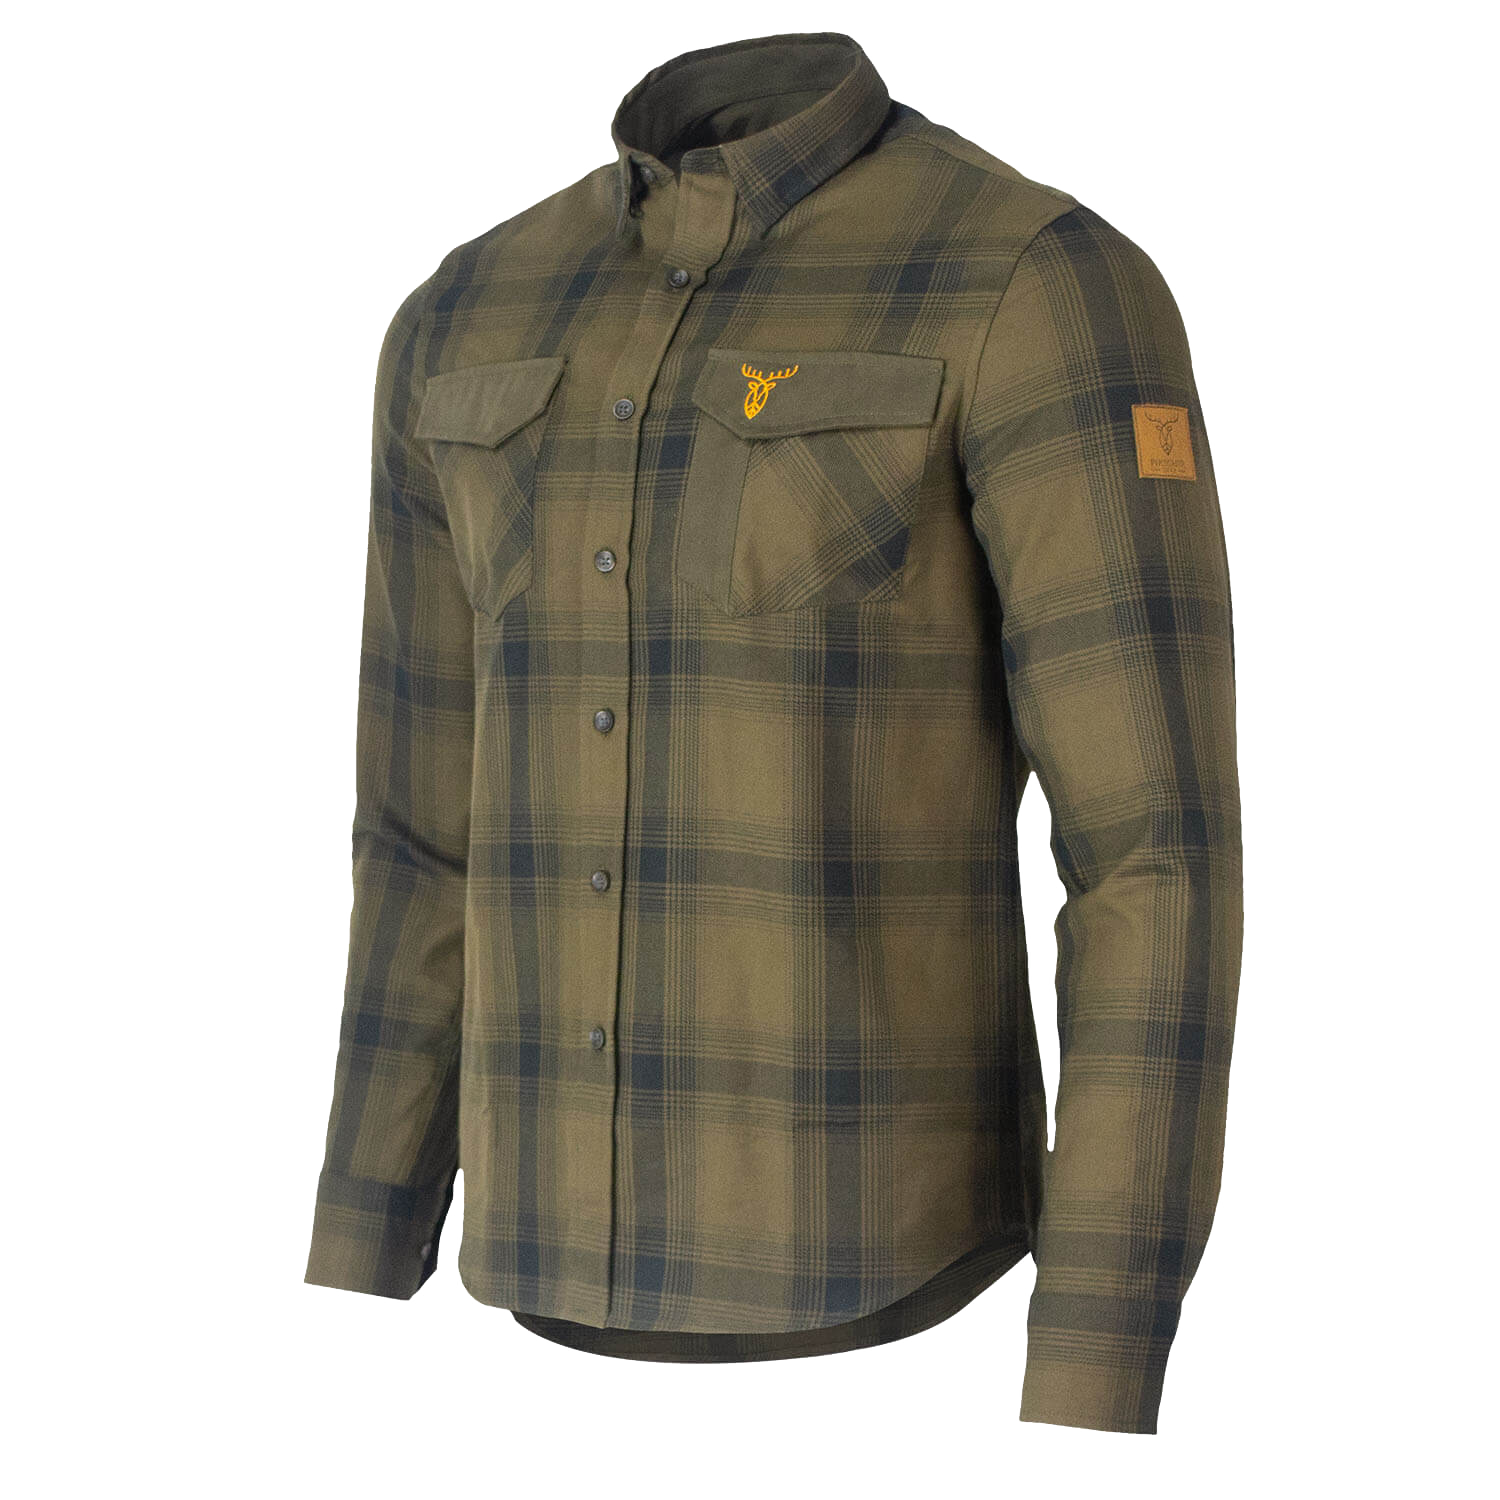 Pirscher Gear Forest Shirt (Mystic Green) - Hunting Shirts